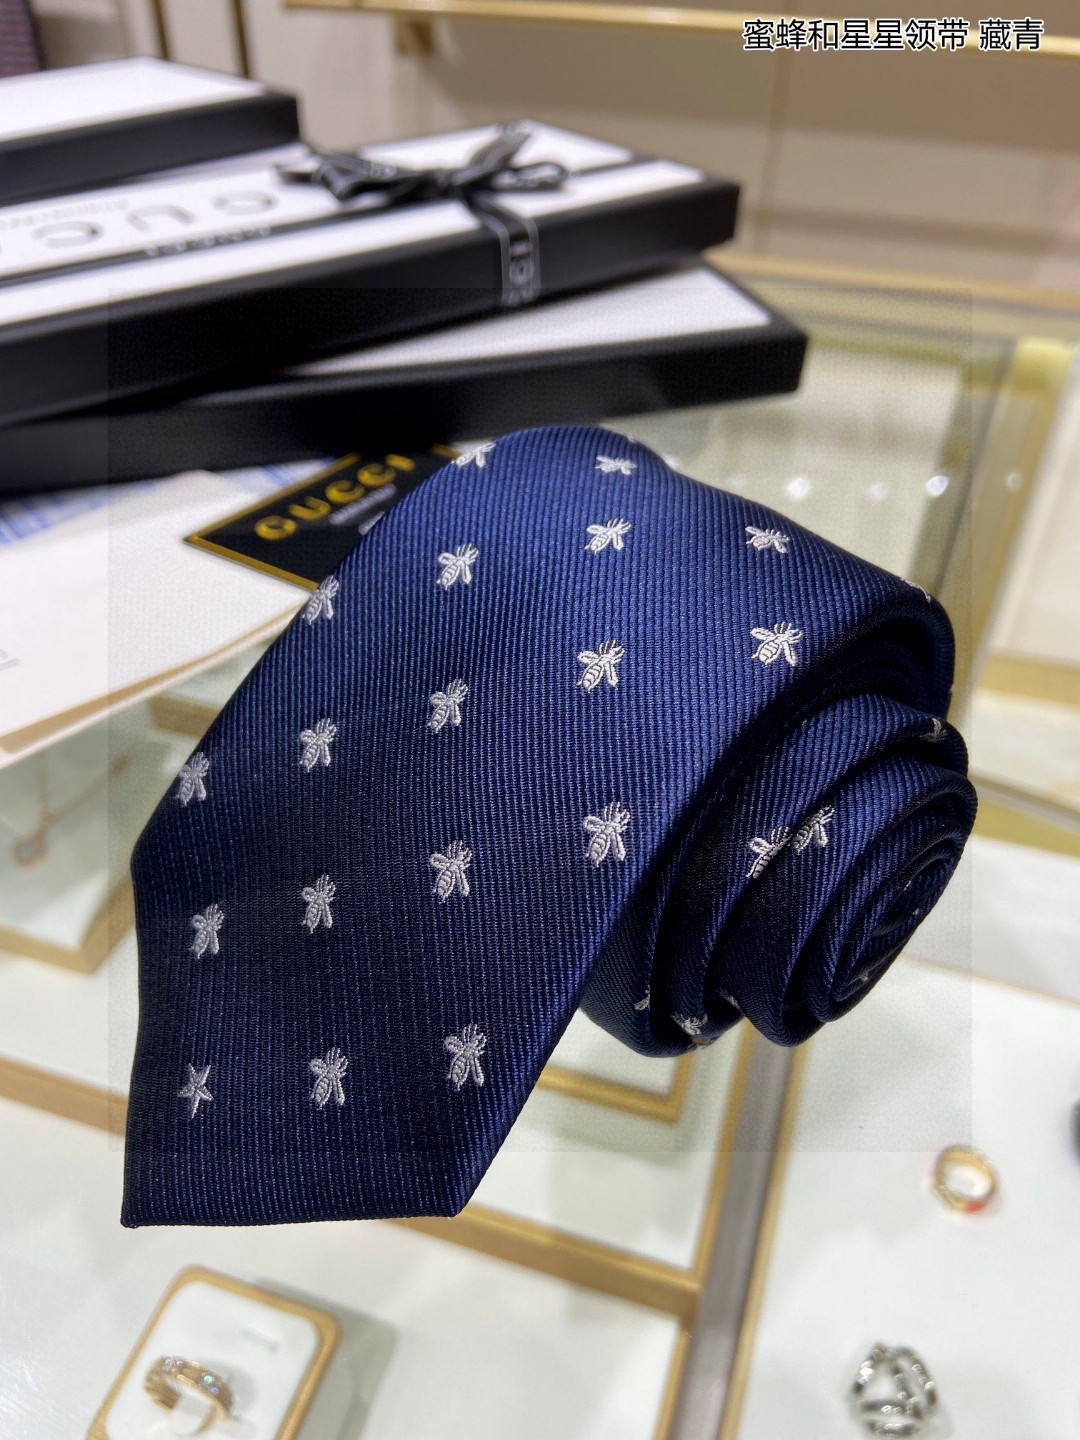 特价G家男士领带系列蜜蜂和星星领带稀有展现精湛手工与时尚优雅的理想选择这款领带将标志性的主题动物小蜜蜂与